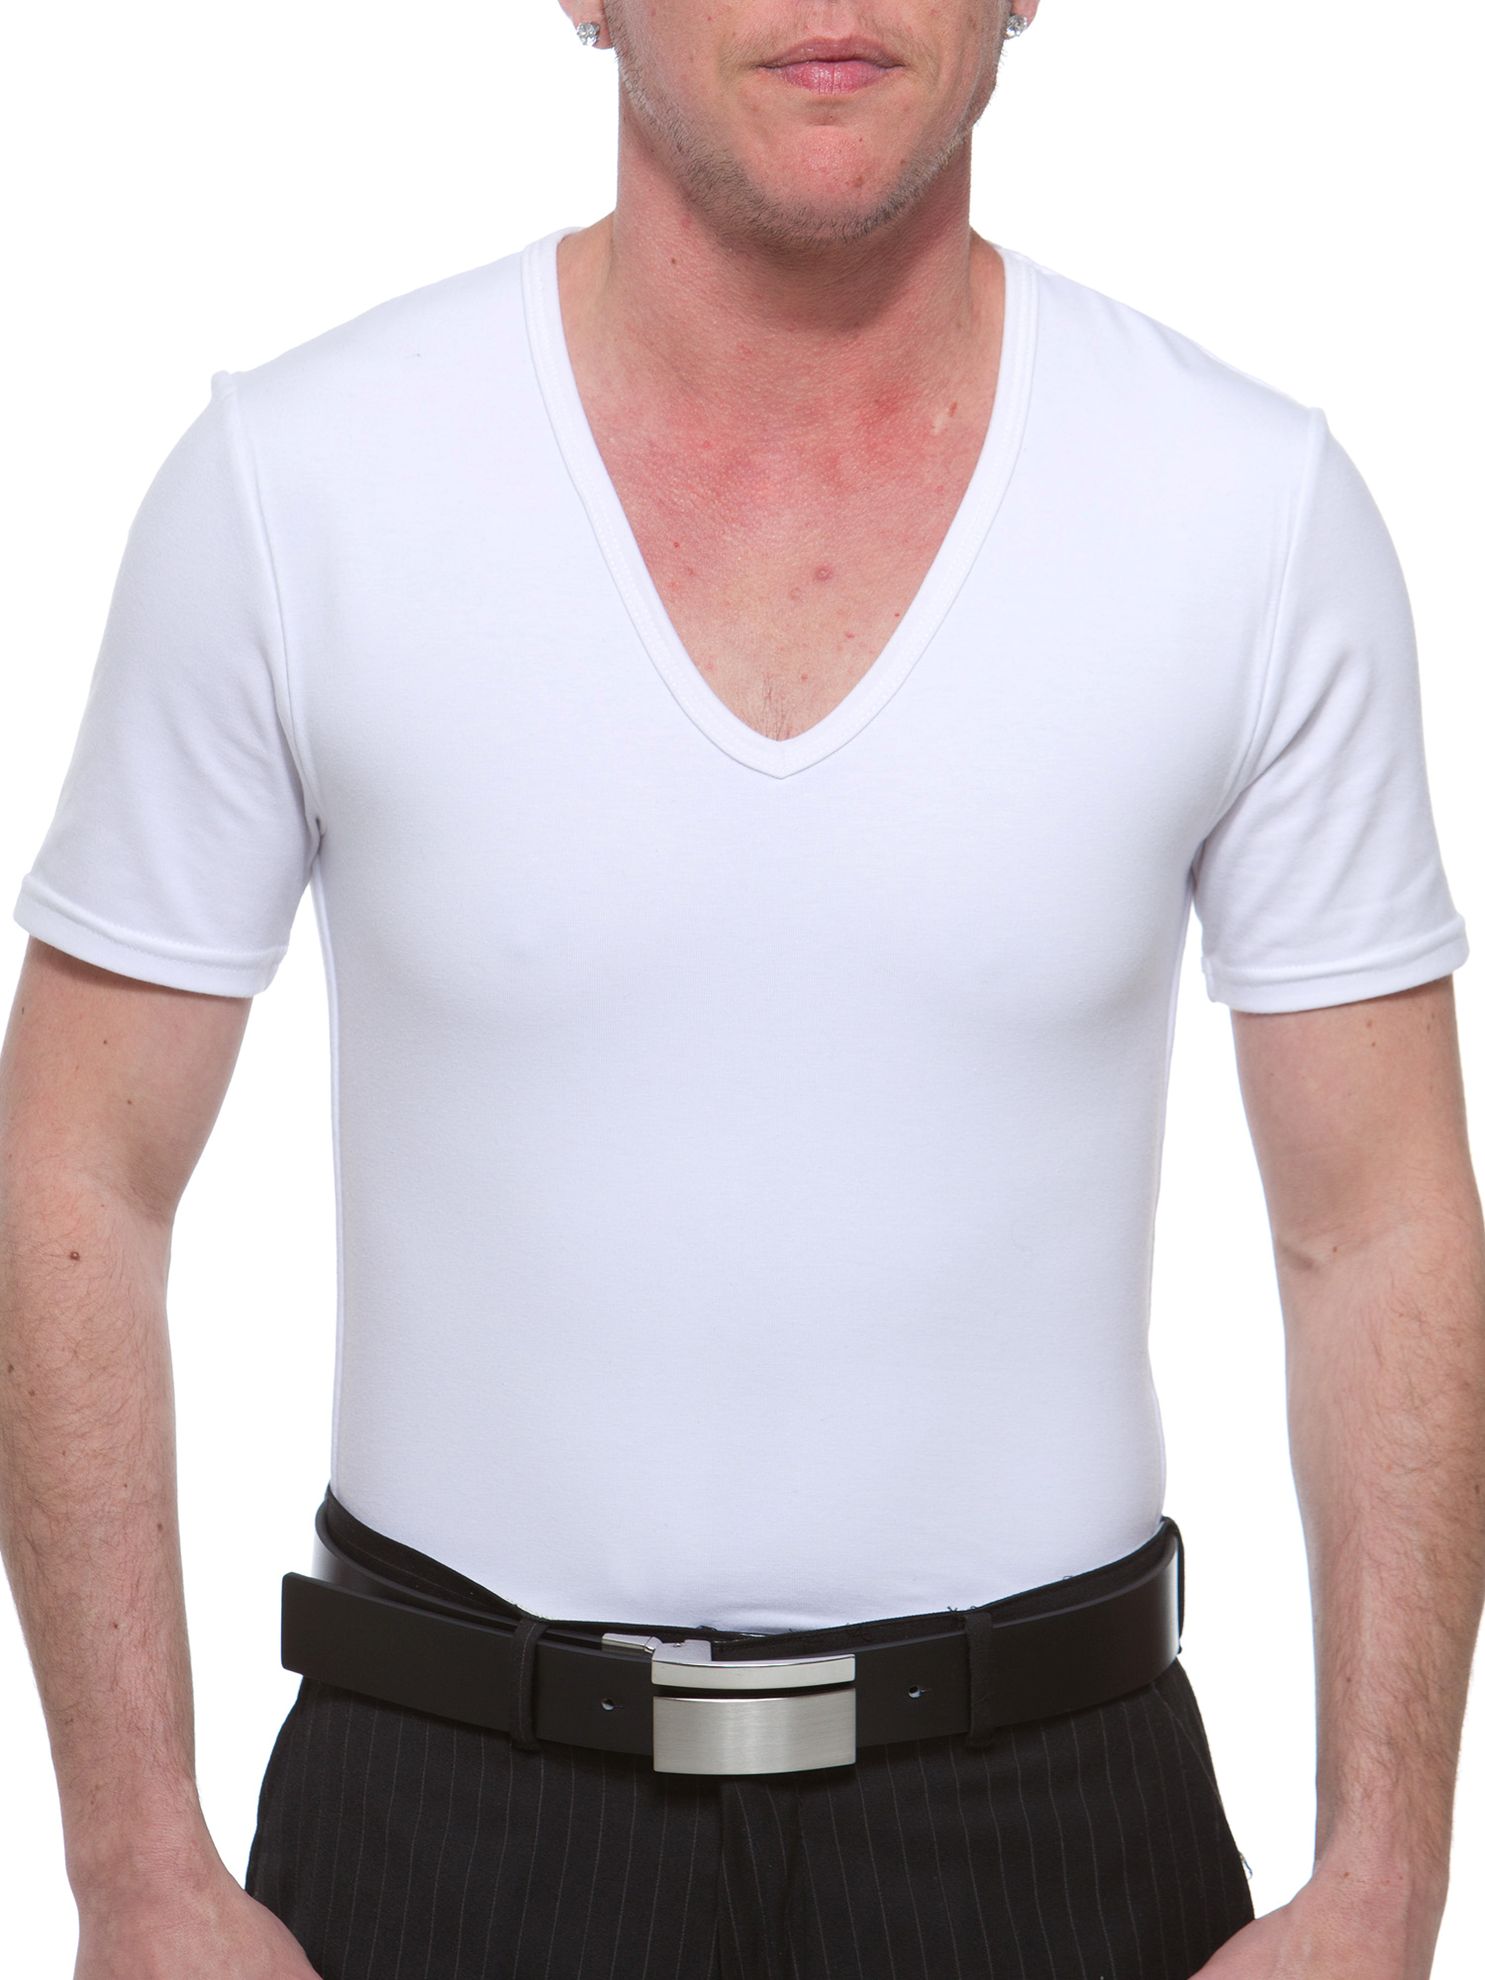 Cotton Concealer V-neck T-shirt. FTM Chest Binders for Trans Men